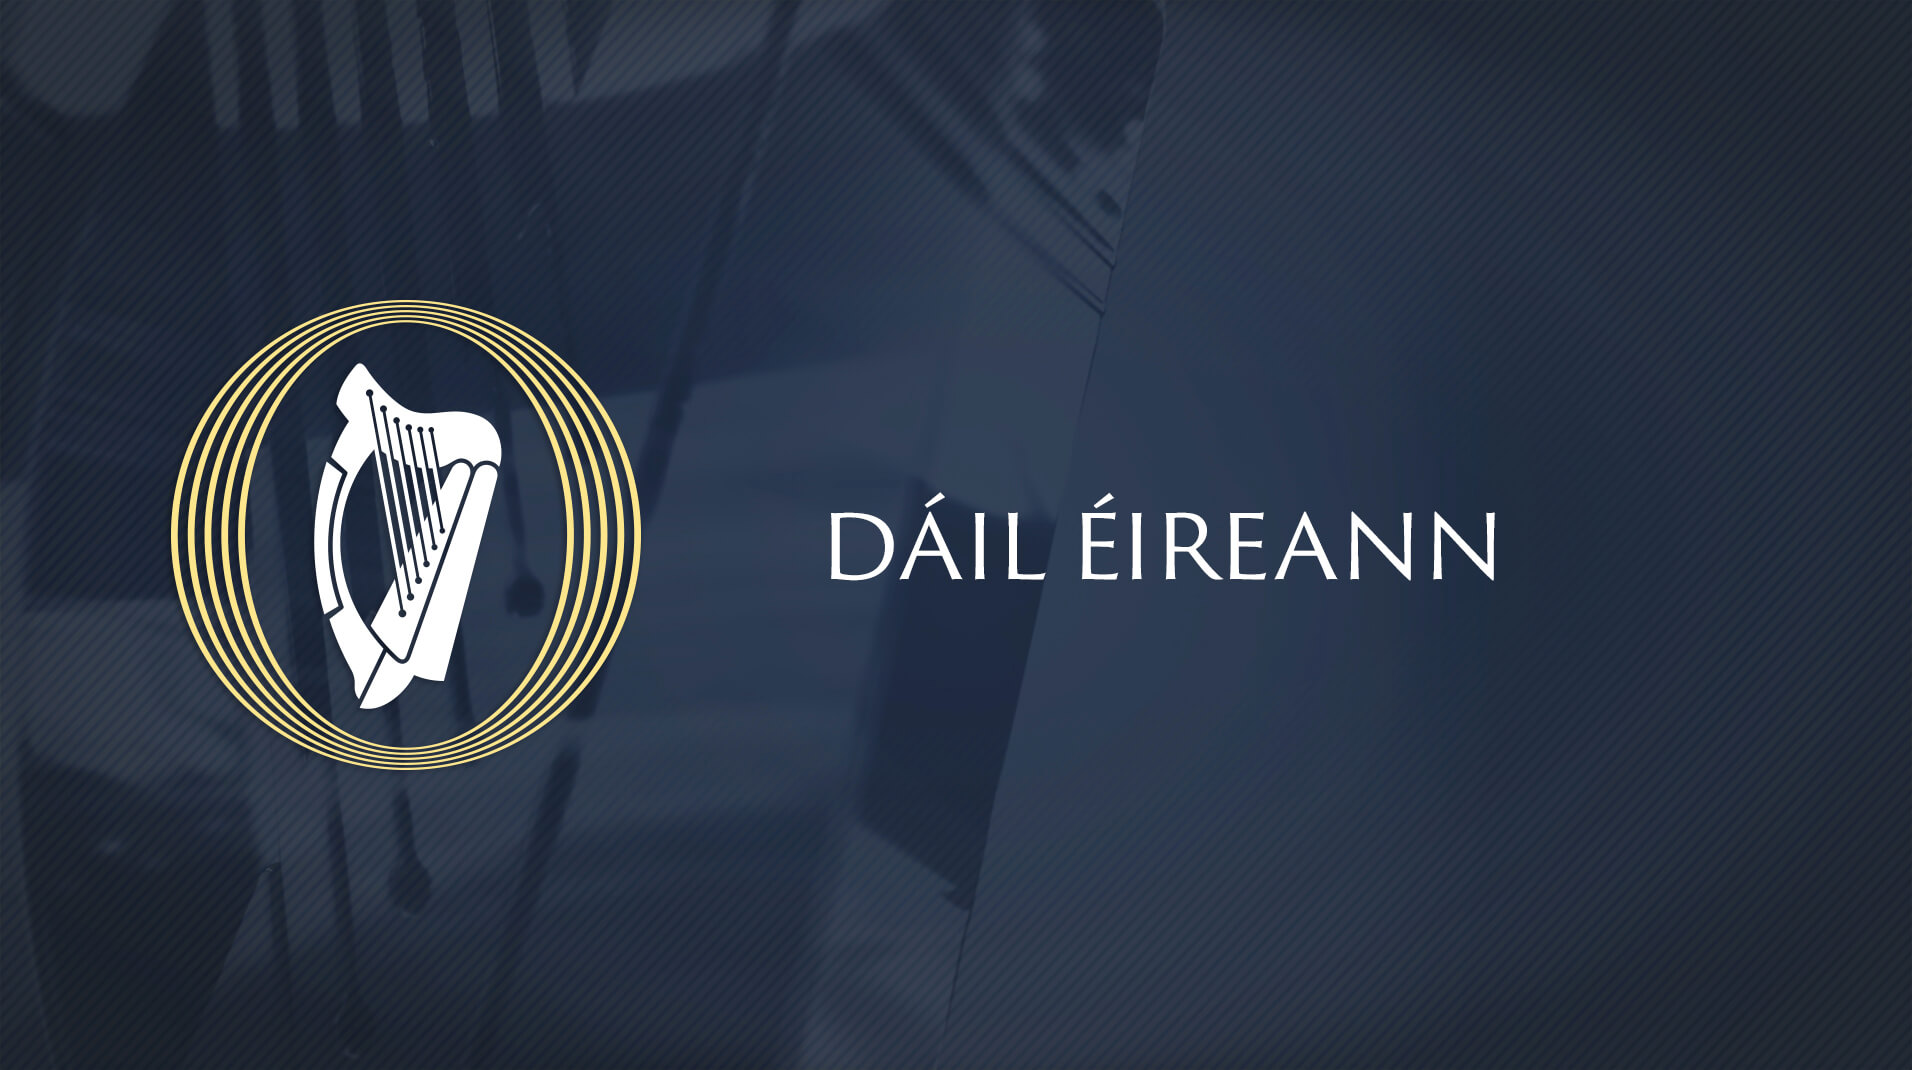 Oireachtas TV Dail Eireann